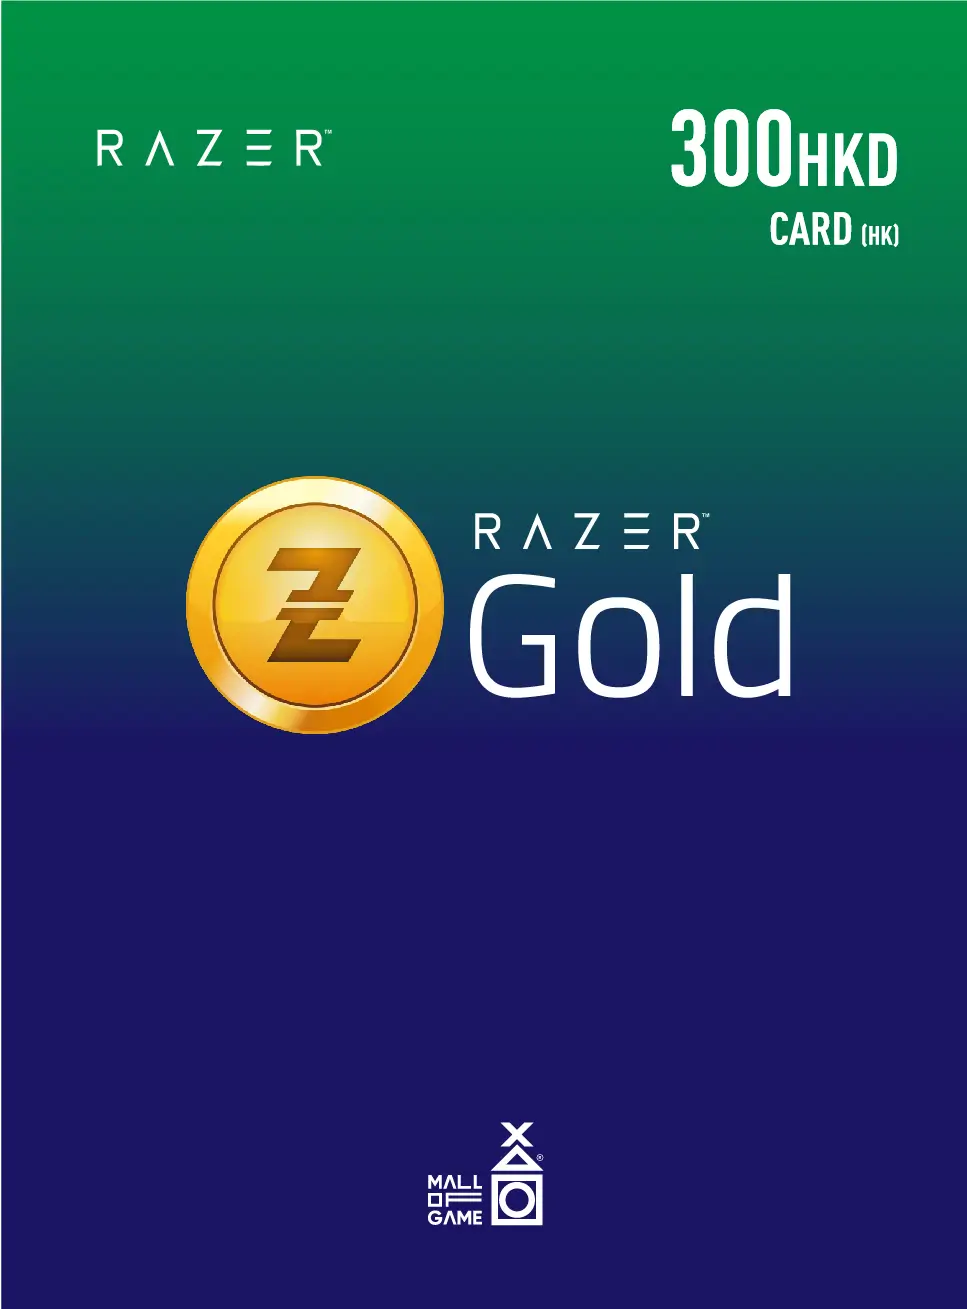 Razer Gold HKD300 (HK)